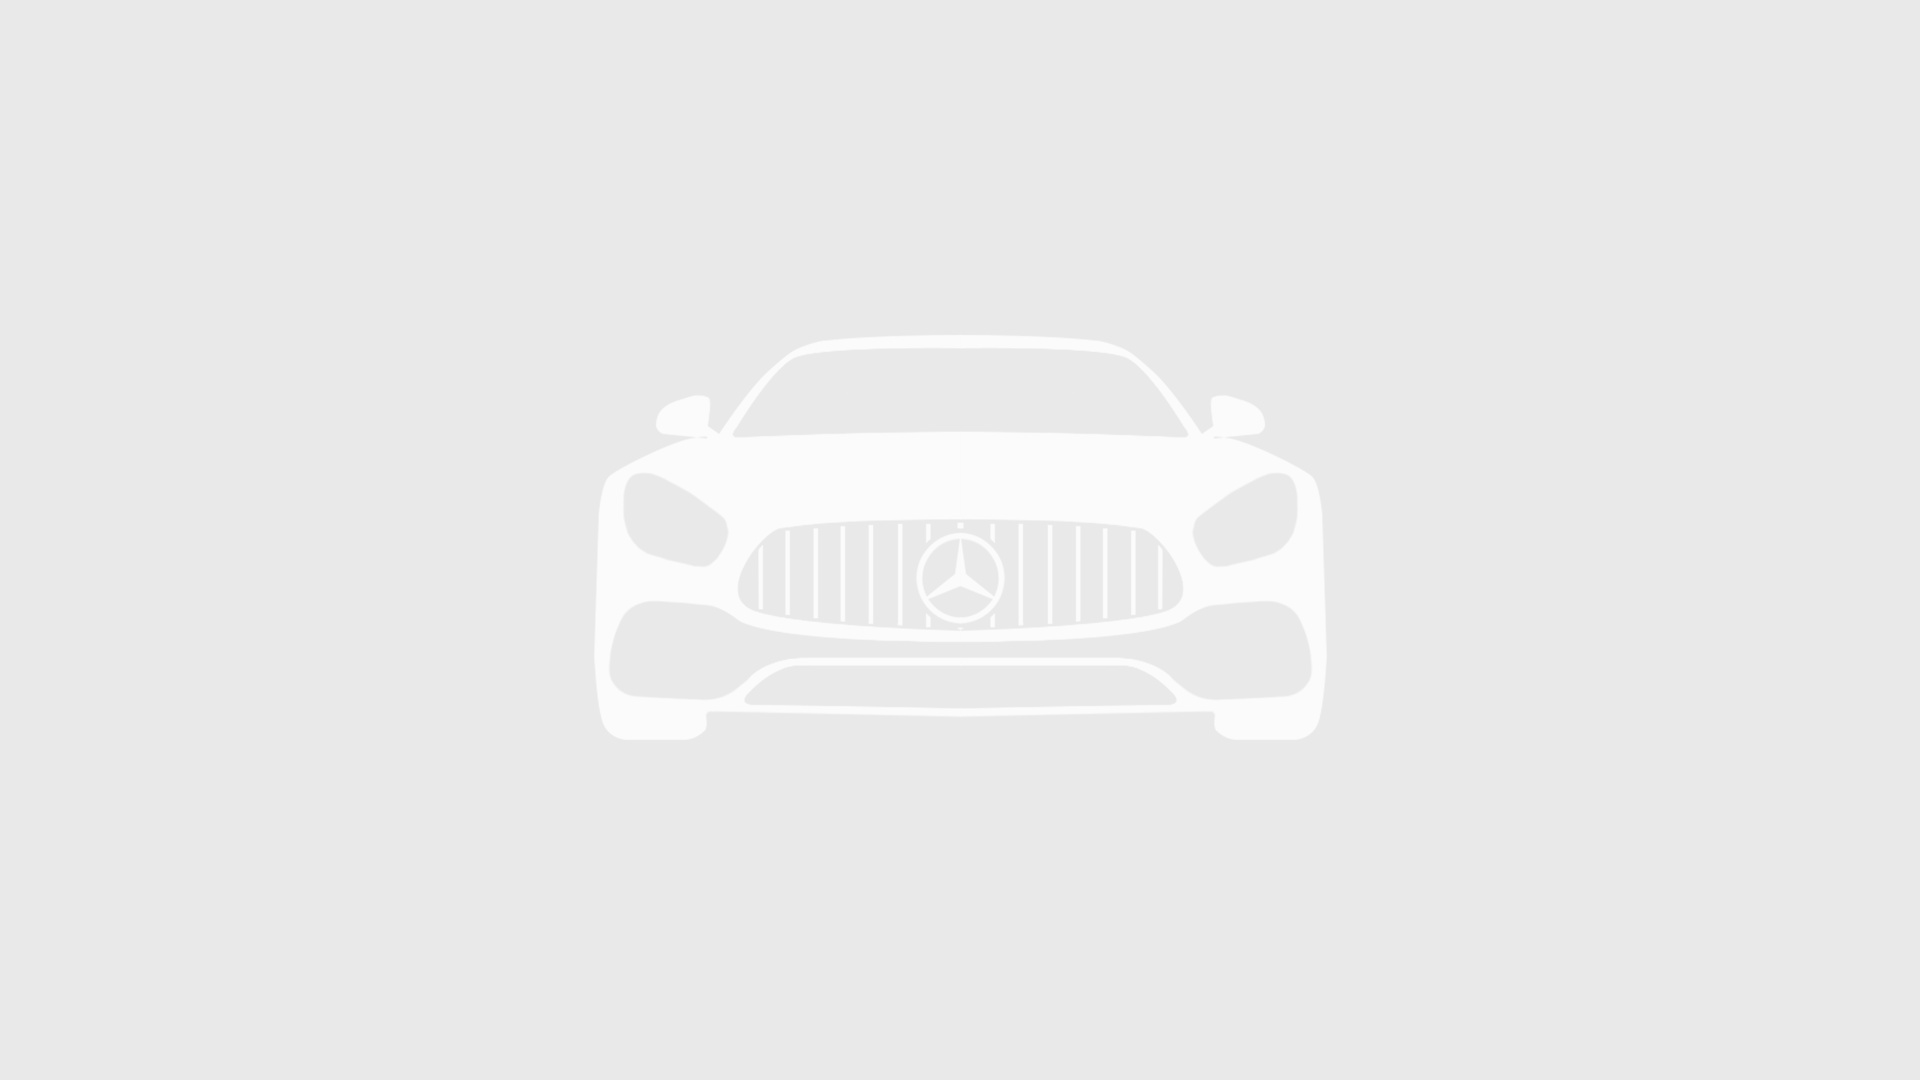 Mercedes-Benz комплектация EXCLUSIVE / L 250 d двигатель 2.1 литра (190 л.с.) Черный